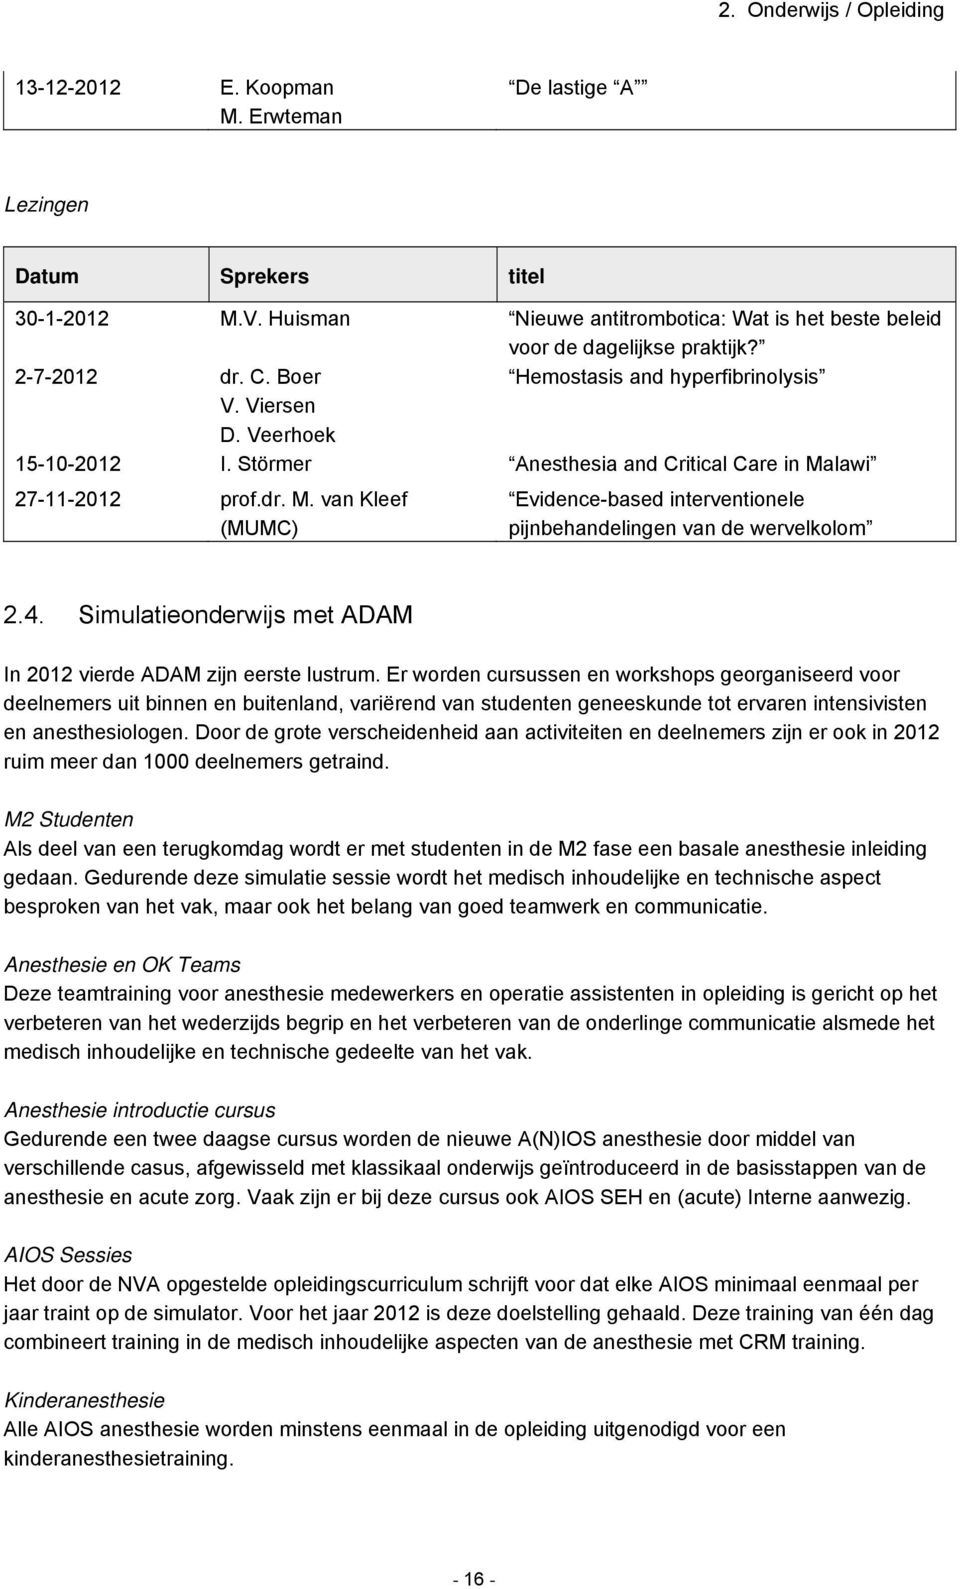 lawi 27-11-2012 prof.dr. M. van Kleef (MUMC) Evidence-based interventionele pijnbehandelingen van de wervelkolom 2.4. Simulatieonderwijs met ADAM In 2012 vierde ADAM zijn eerste lustrum.